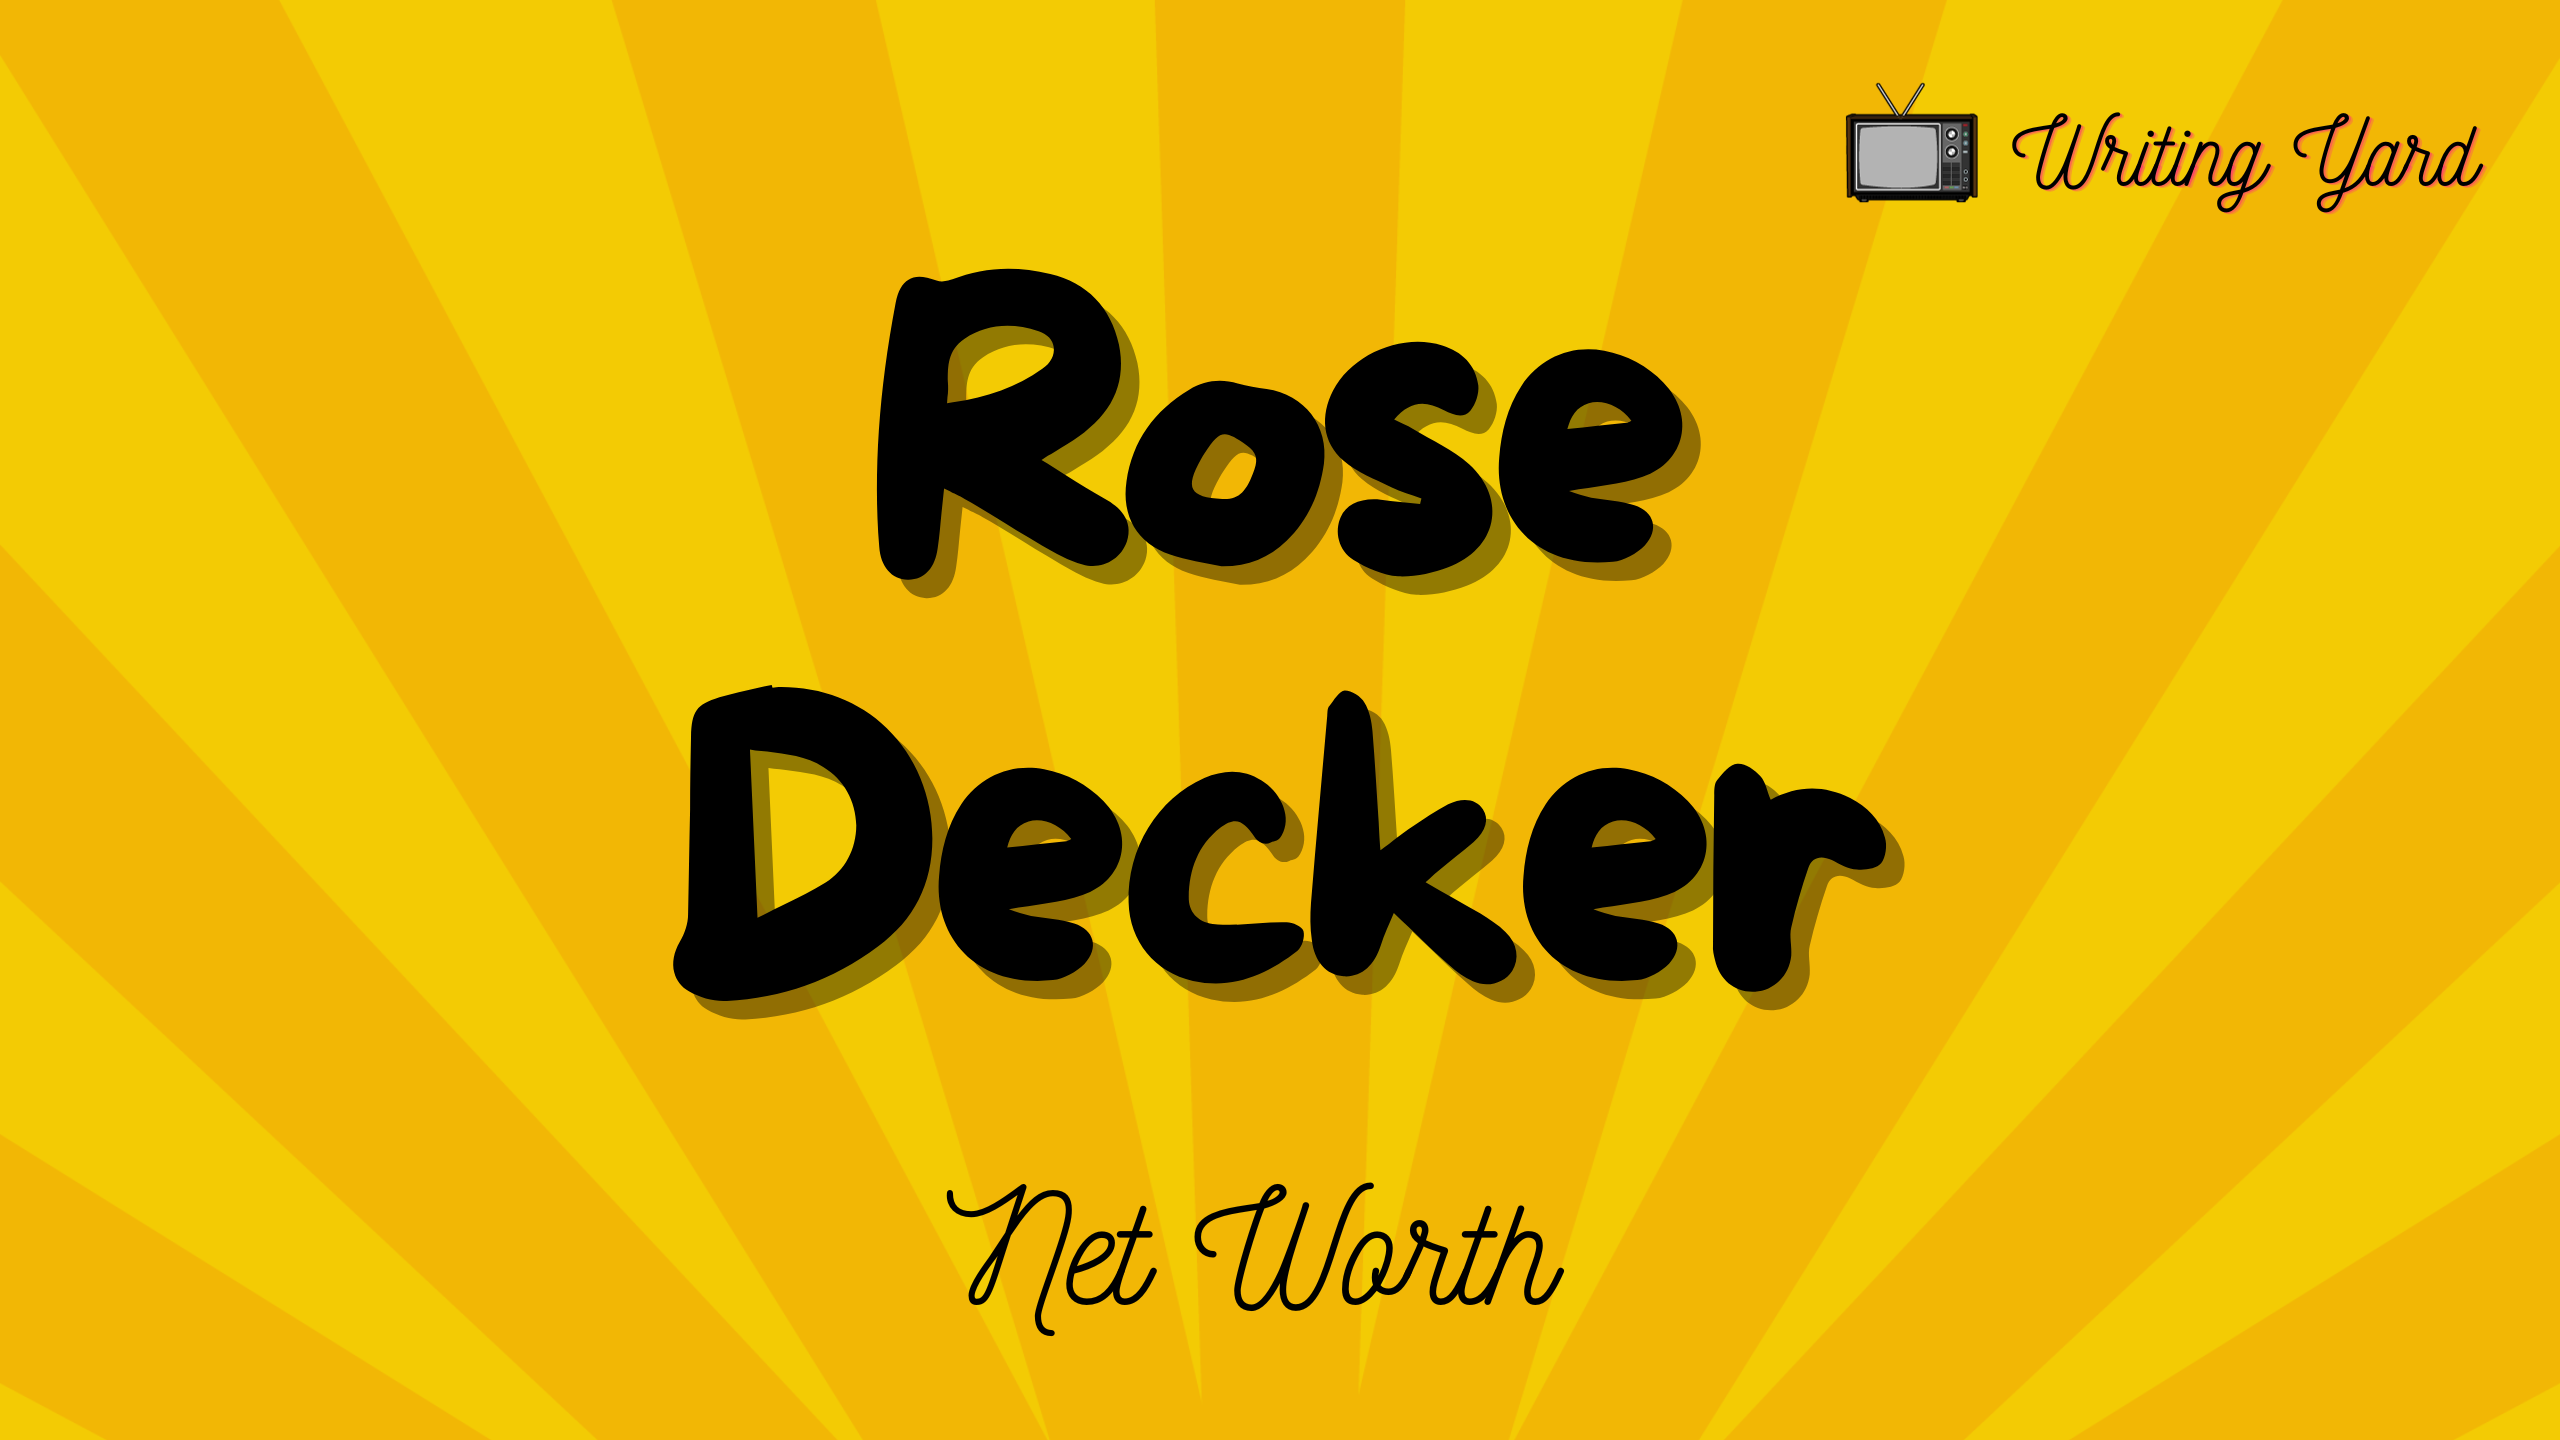 Rose Decker Net Worth